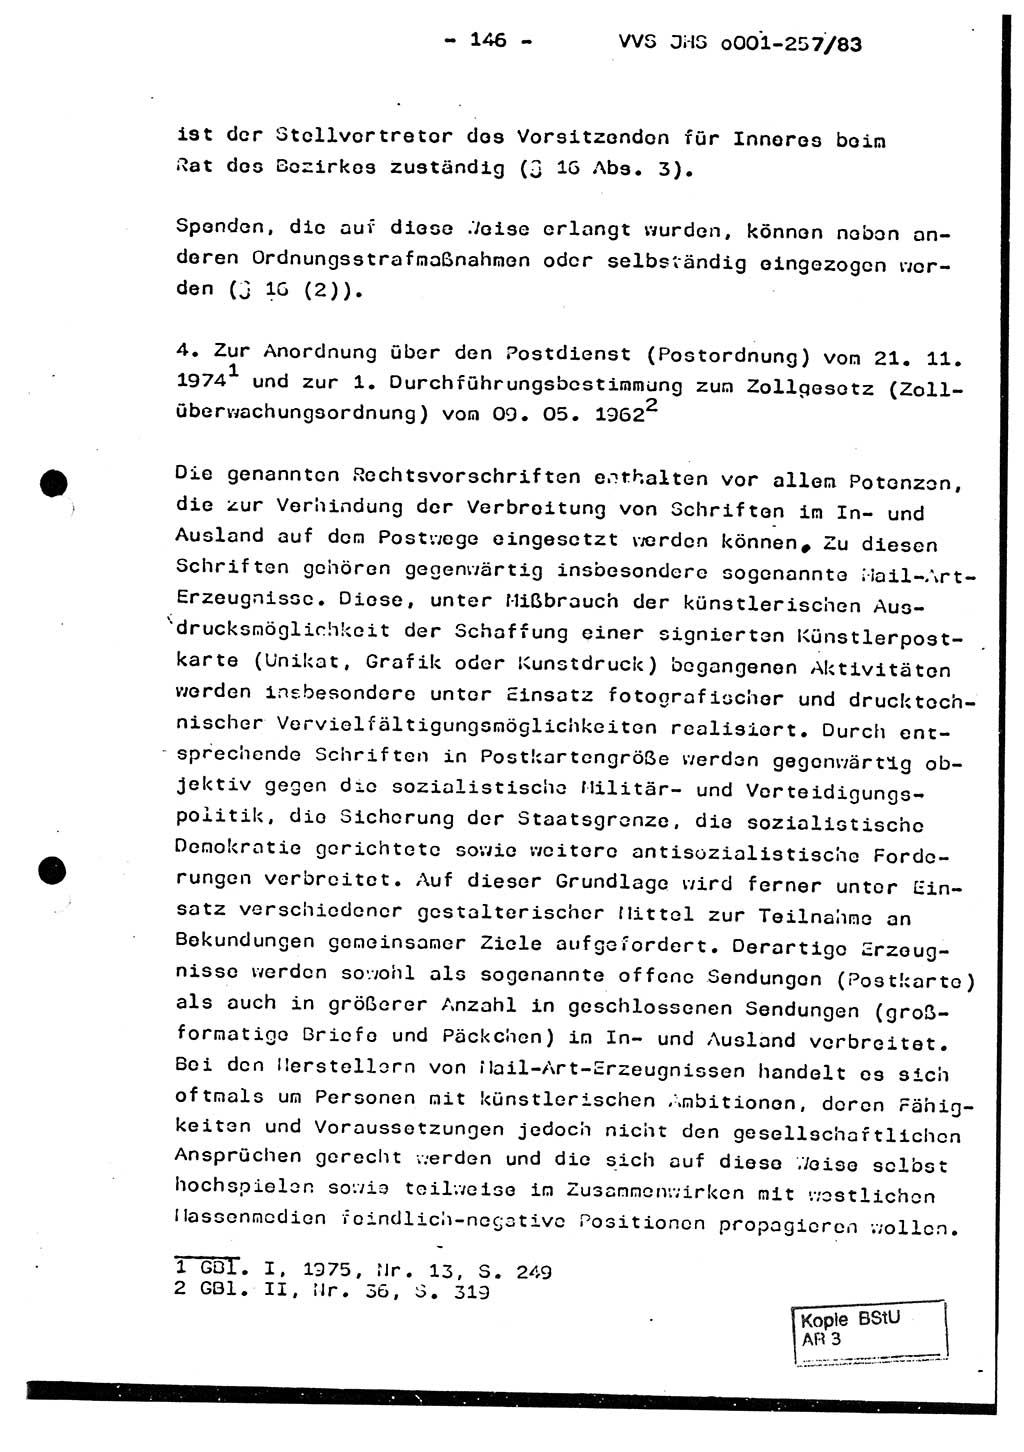 Dissertation, Oberst Helmut Lubas (BV Mdg.), Oberstleutnant Manfred Eschberger (HA IX), Oberleutnant Hans-Jürgen Ludwig (JHS), Ministerium für Staatssicherheit (MfS) [Deutsche Demokratische Republik (DDR)], Juristische Hochschule (JHS), Vertrauliche Verschlußsache (VVS) o001-257/83, Potsdam 1983, Seite 146 (Diss. MfS DDR JHS VVS o001-257/83 1983, S. 146)